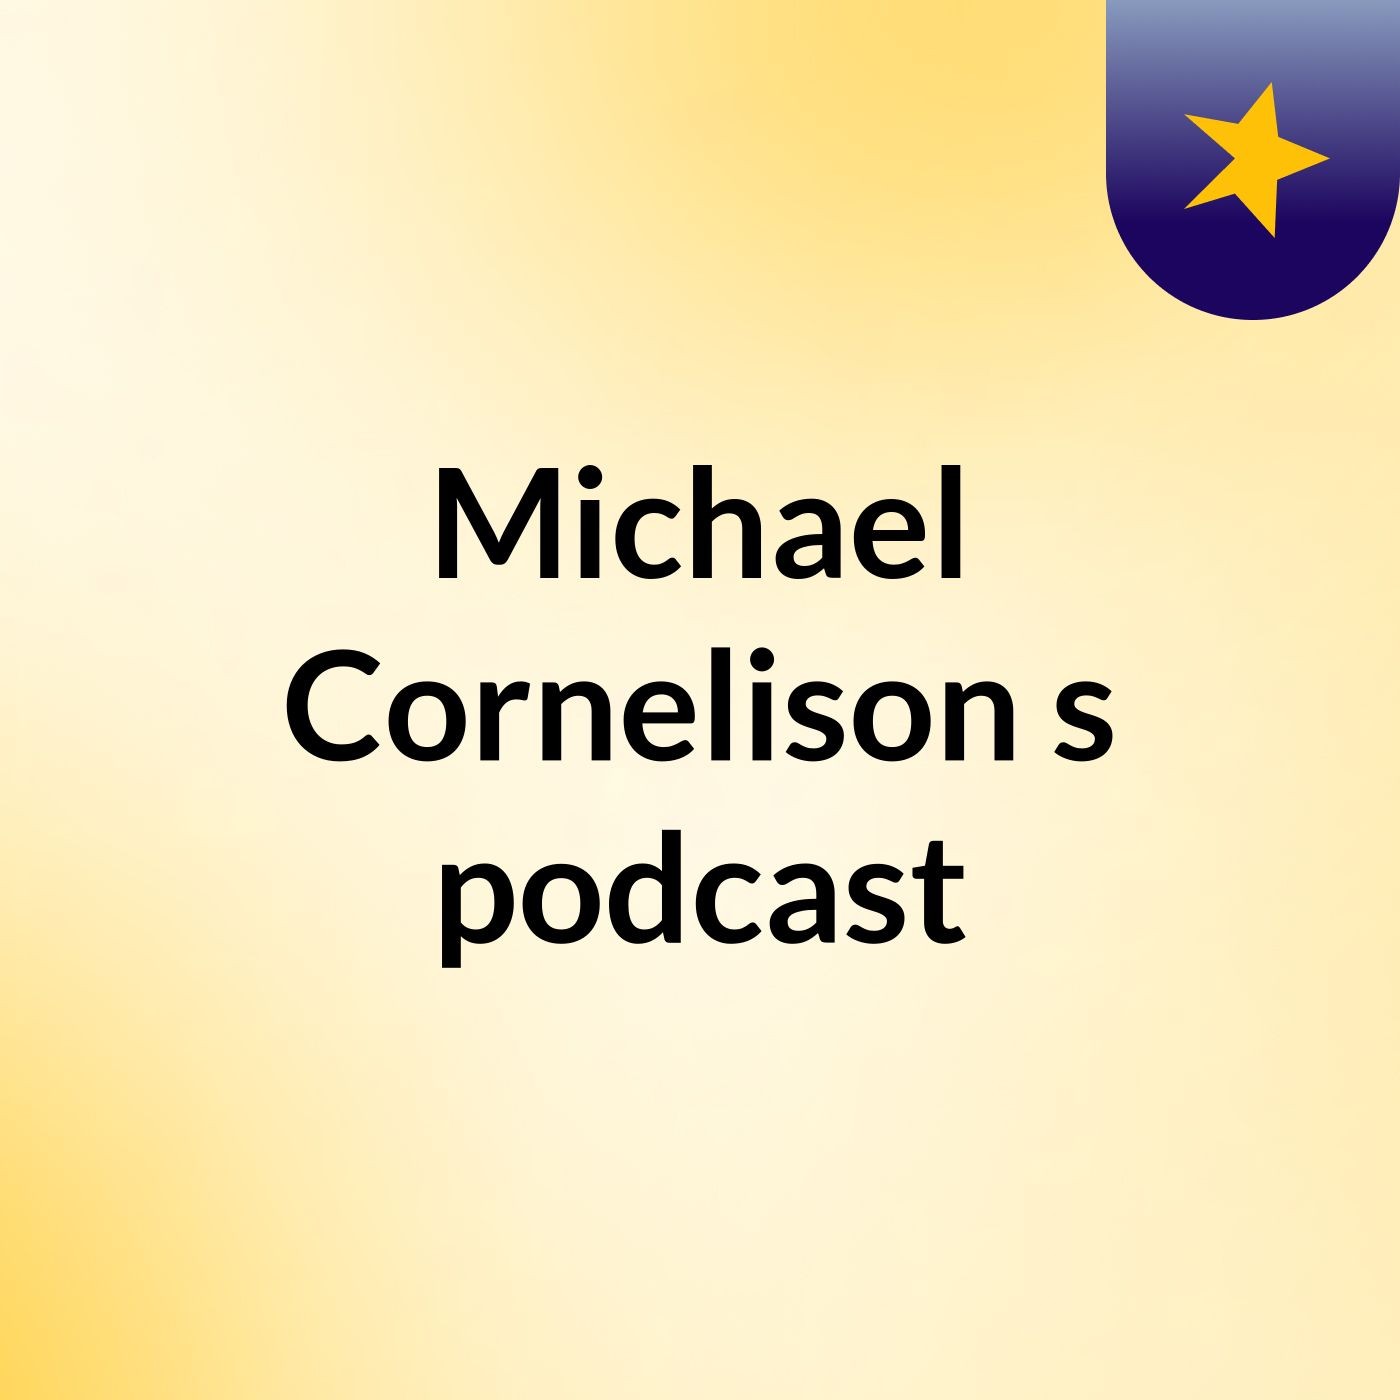 Michael Cornelison's podcast